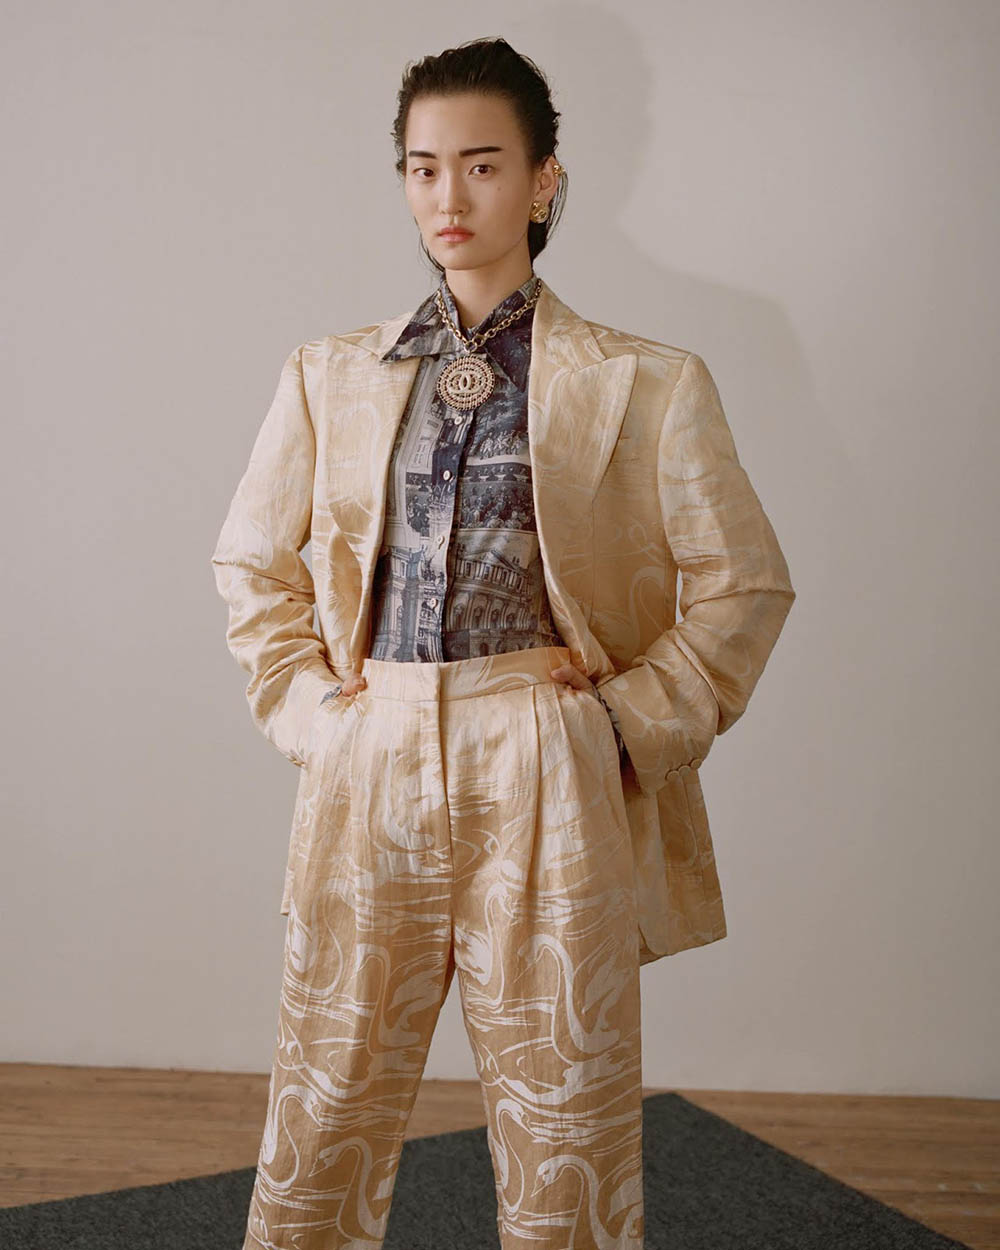 Wangy and Chunjie Liu by Zoltan Tombor for Vogue Hong Kong May 2019